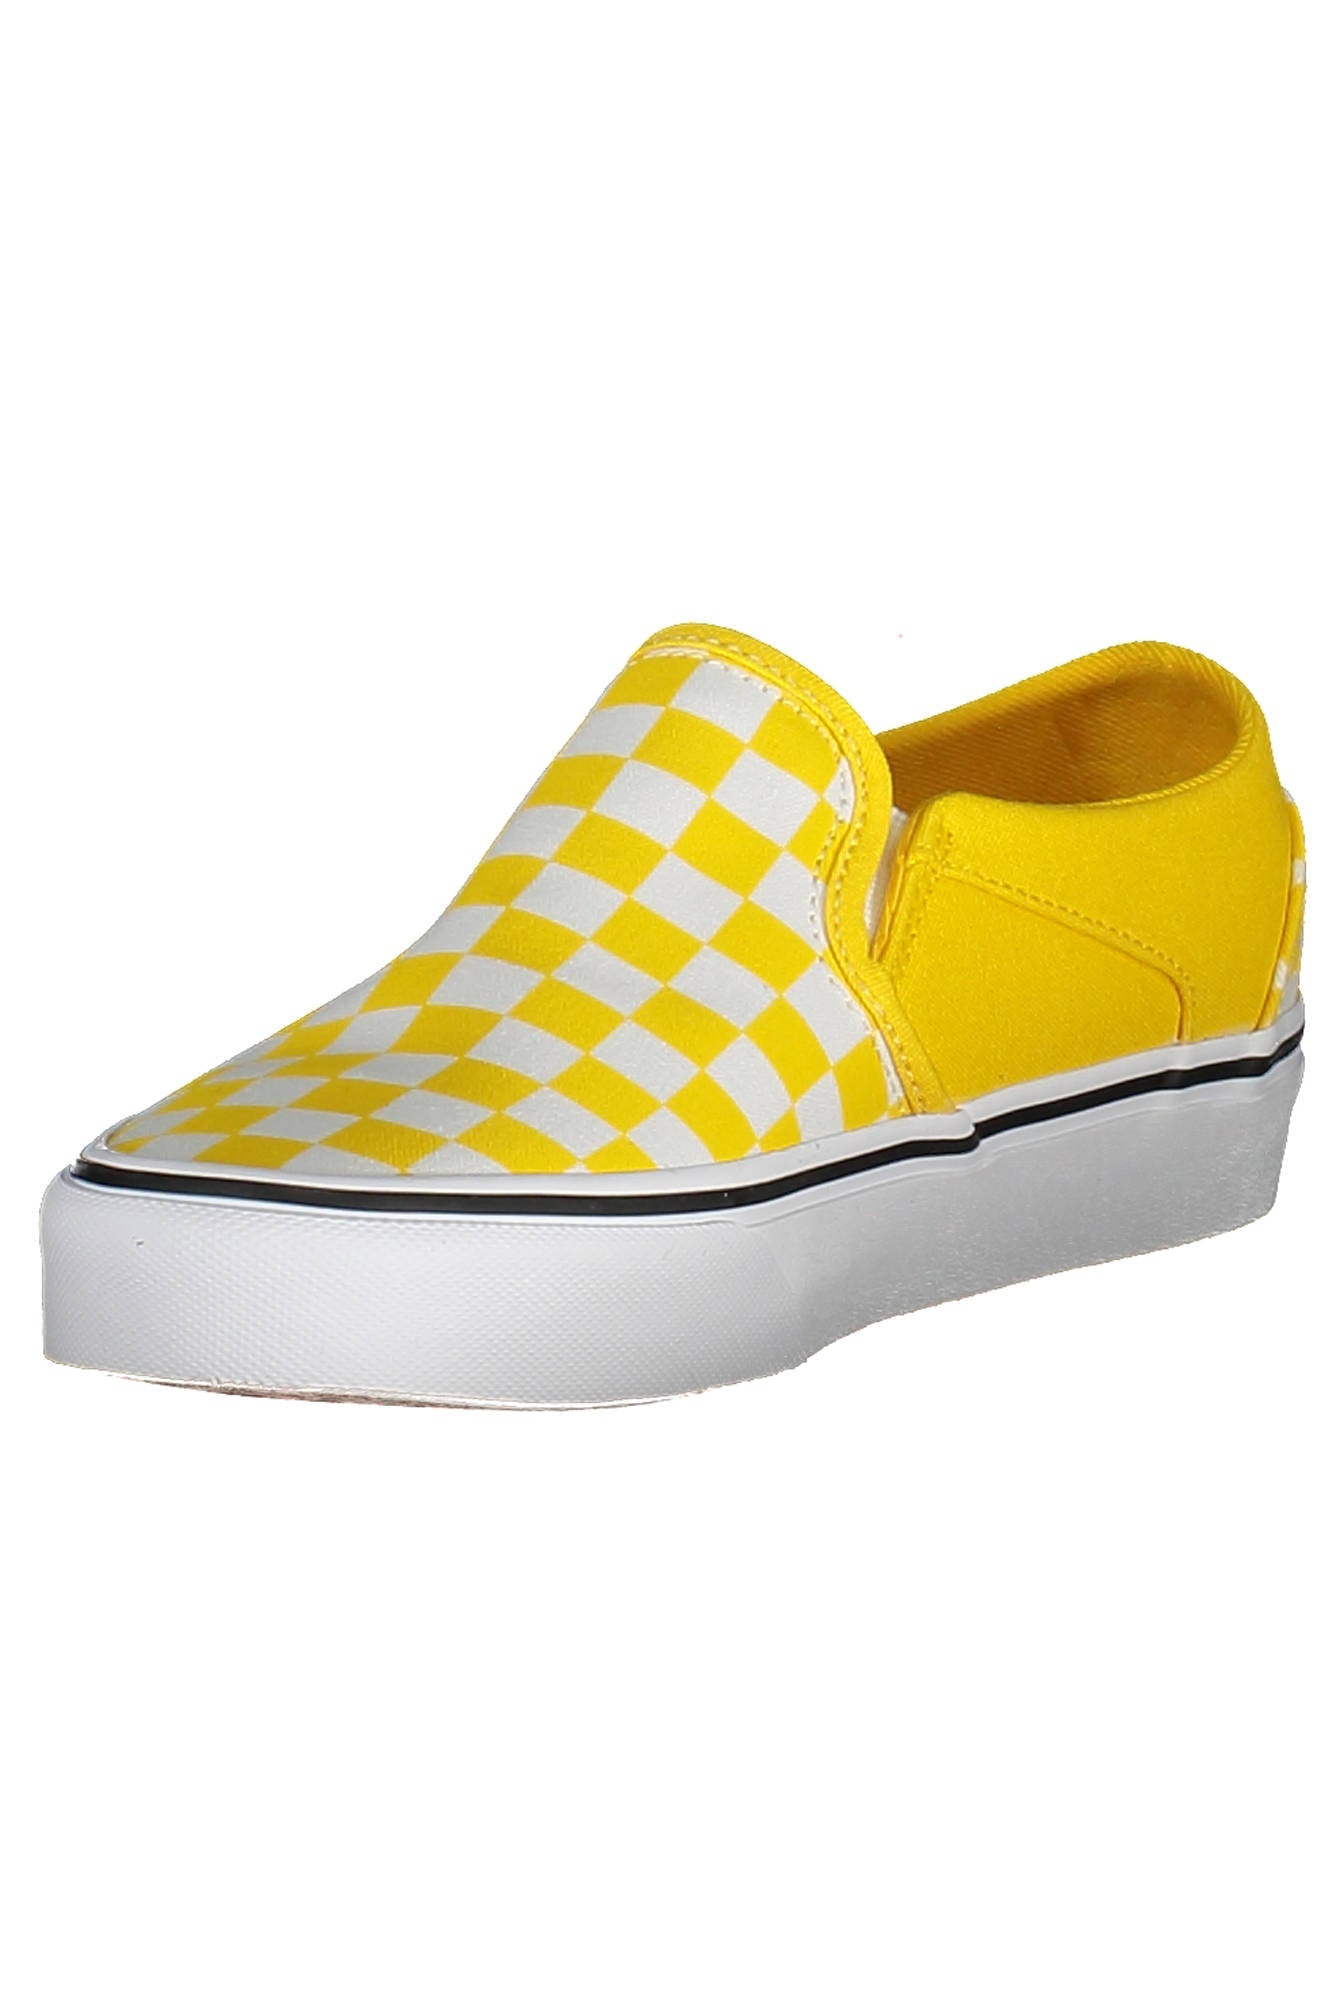 Vans Yellow Sneakers - Fizigo